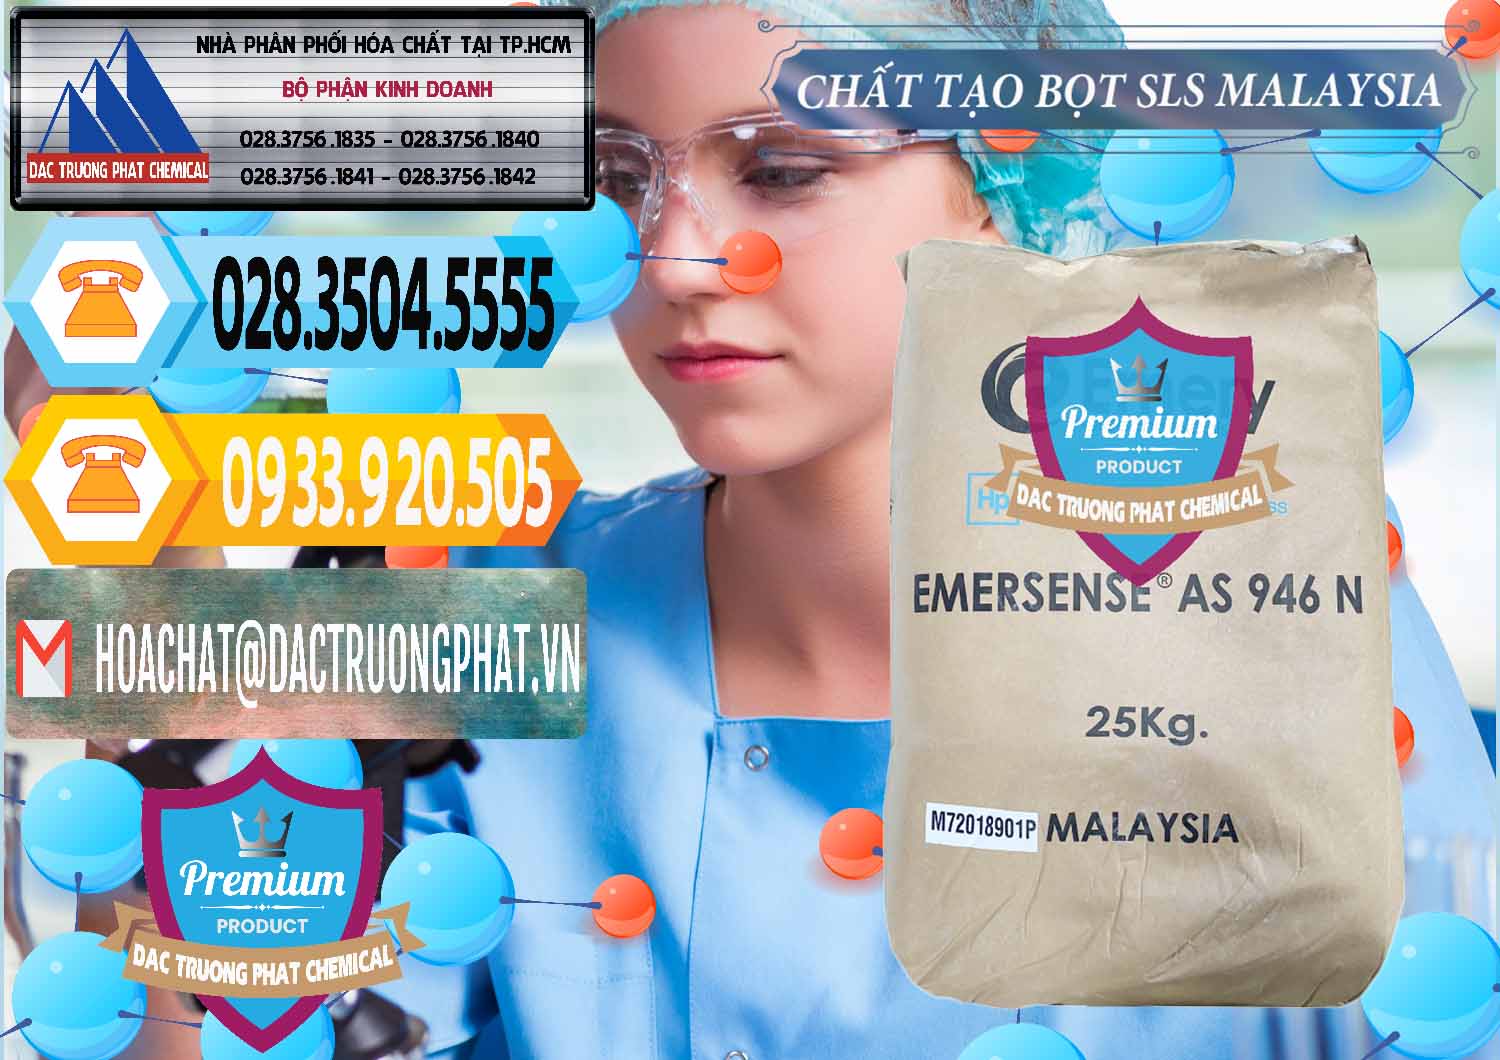 Đơn vị chuyên kinh doanh ( bán ) Chất Tạo Bọt SLS Emery - Emersense AS 946N Mã Lai Malaysia - 0423 - Đơn vị chuyên nhập khẩu _ phân phối hóa chất tại TP.HCM - hoachattayrua.net